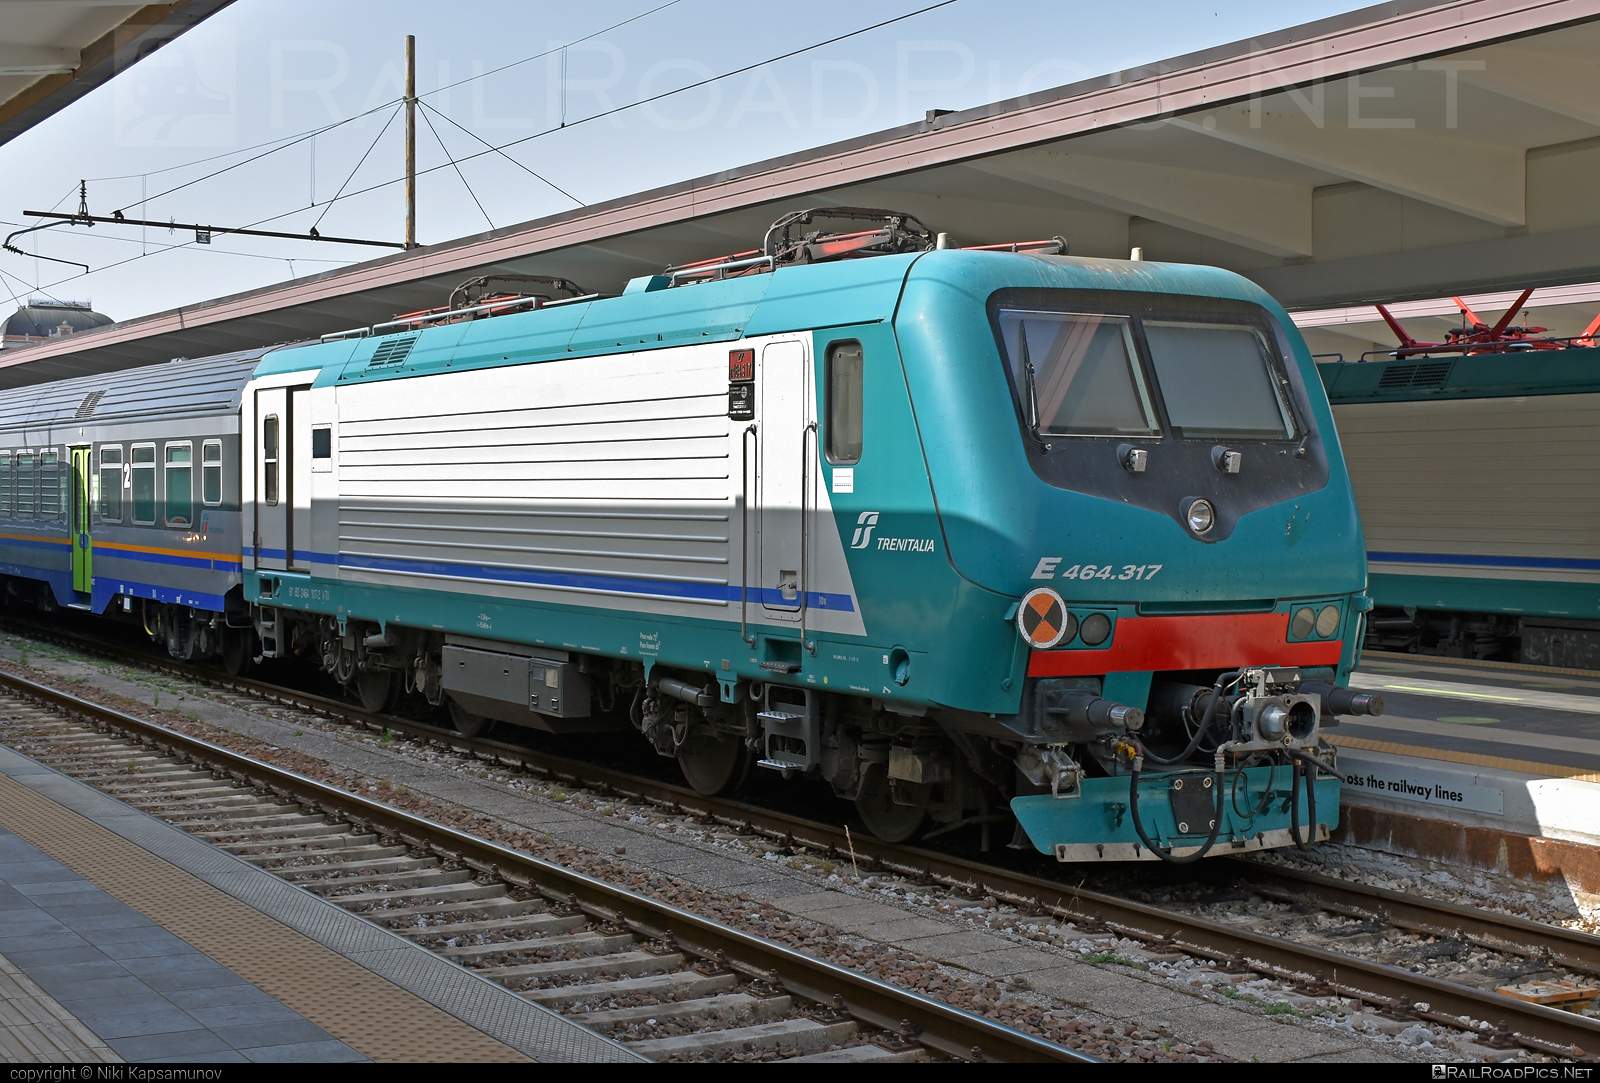 Bombardier TRAXX P160 DCP - E 464.317 operated by Trenitalia S.p.A. #bombardier #bombardiertraxx #ferroviedellostato #fs #fsitaliane #lavatrice #traxx #traxxp160 #traxxp160dcp #trenitalia #trenitaliaspa